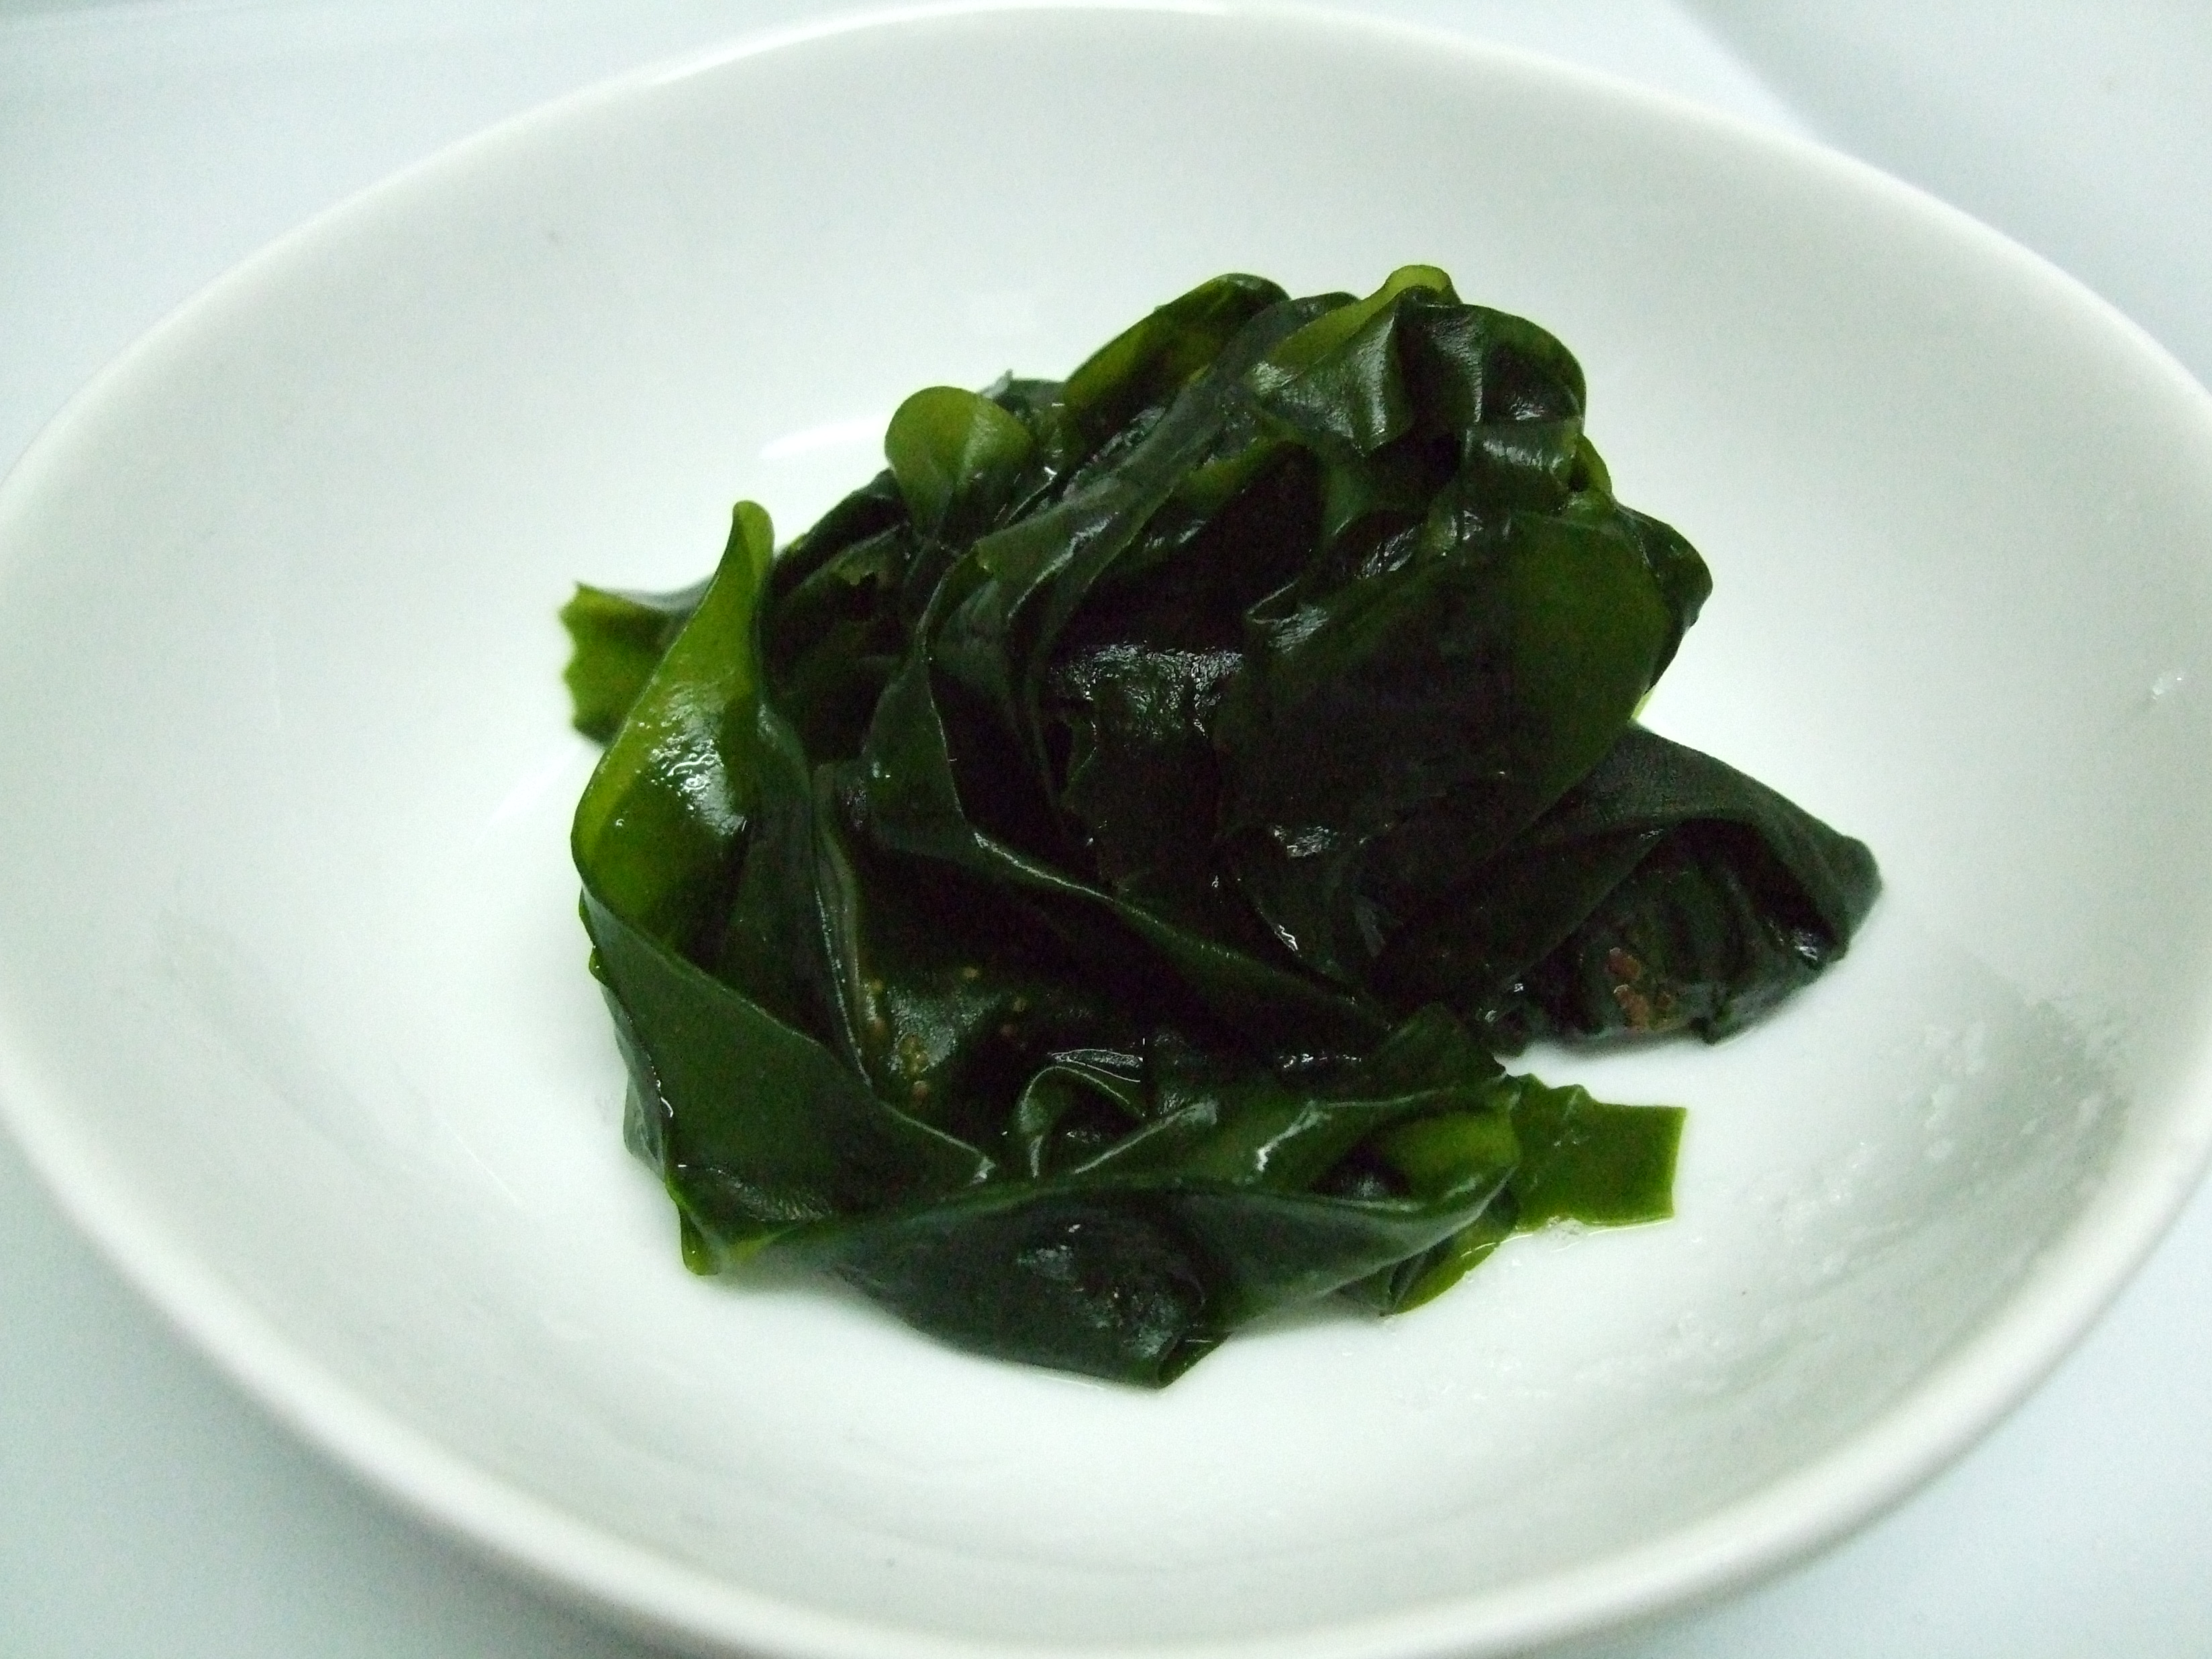 File:Boiled wakame.jpg - Wikipedia